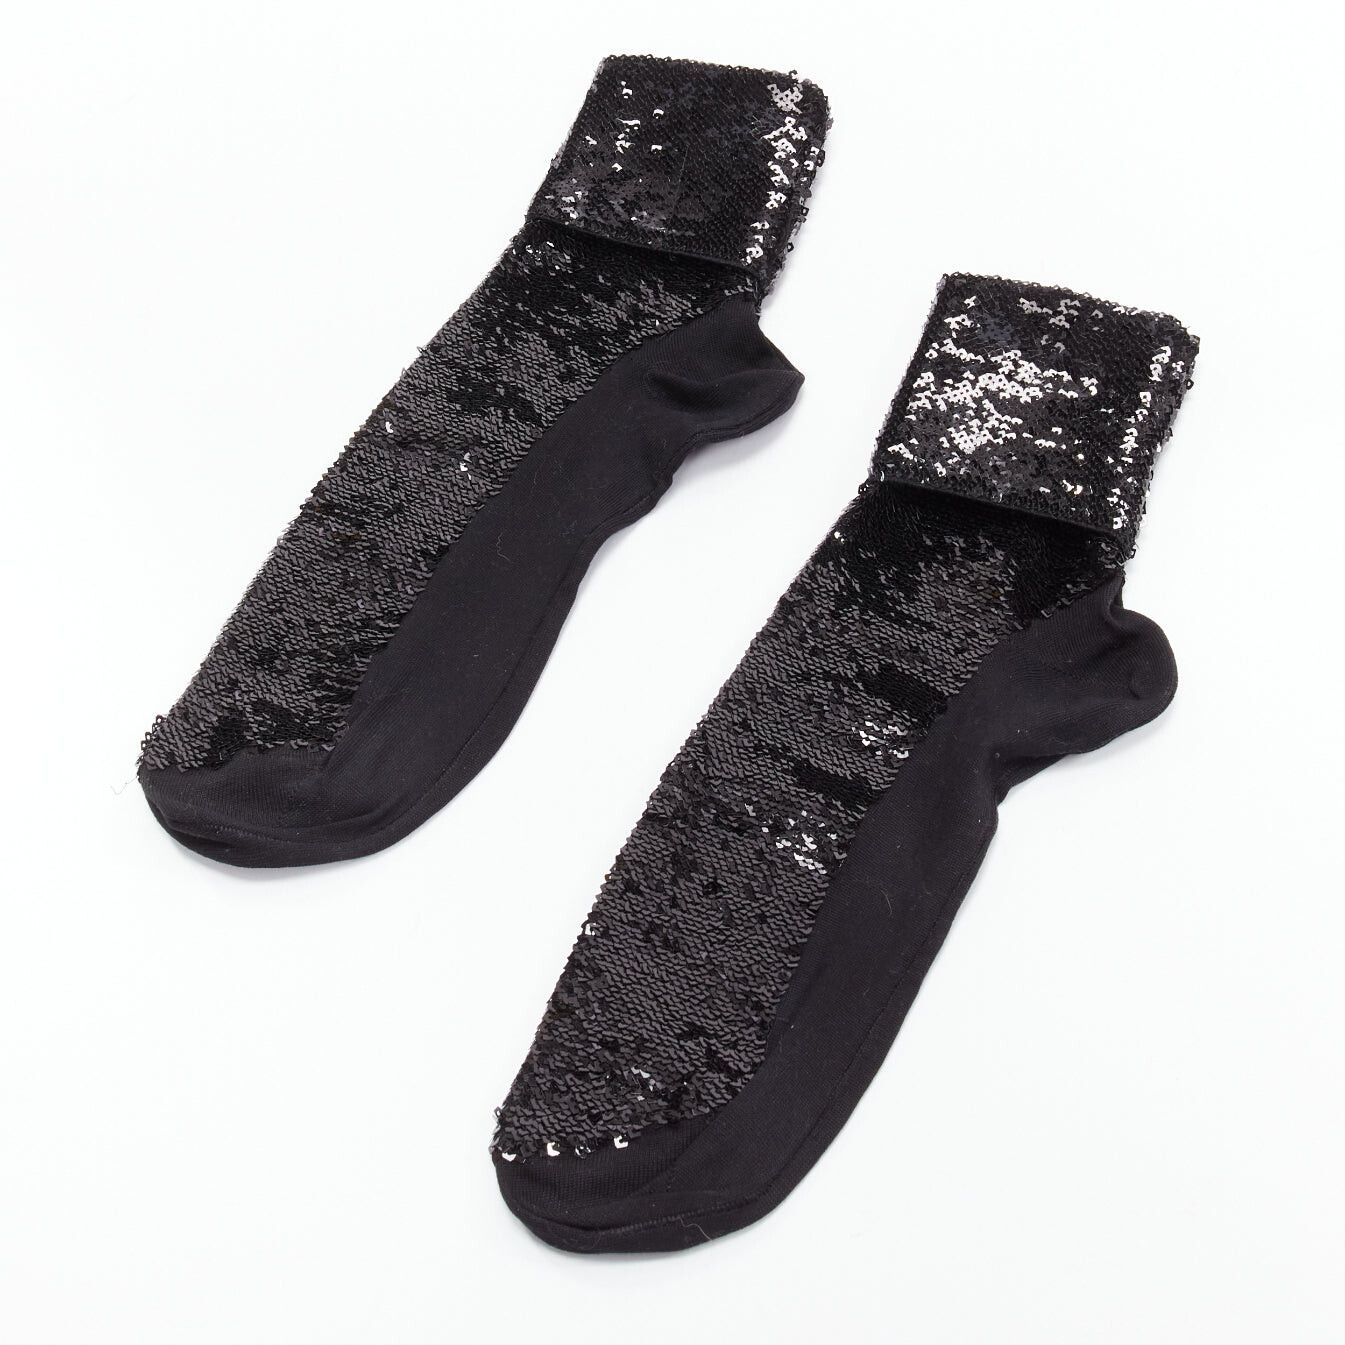 Saint Laurent Paris SAINT LAURENT 2016 black sequins cotton blend rolled cuffed socks EUR38 Size ONE SIZE - 1 Preview